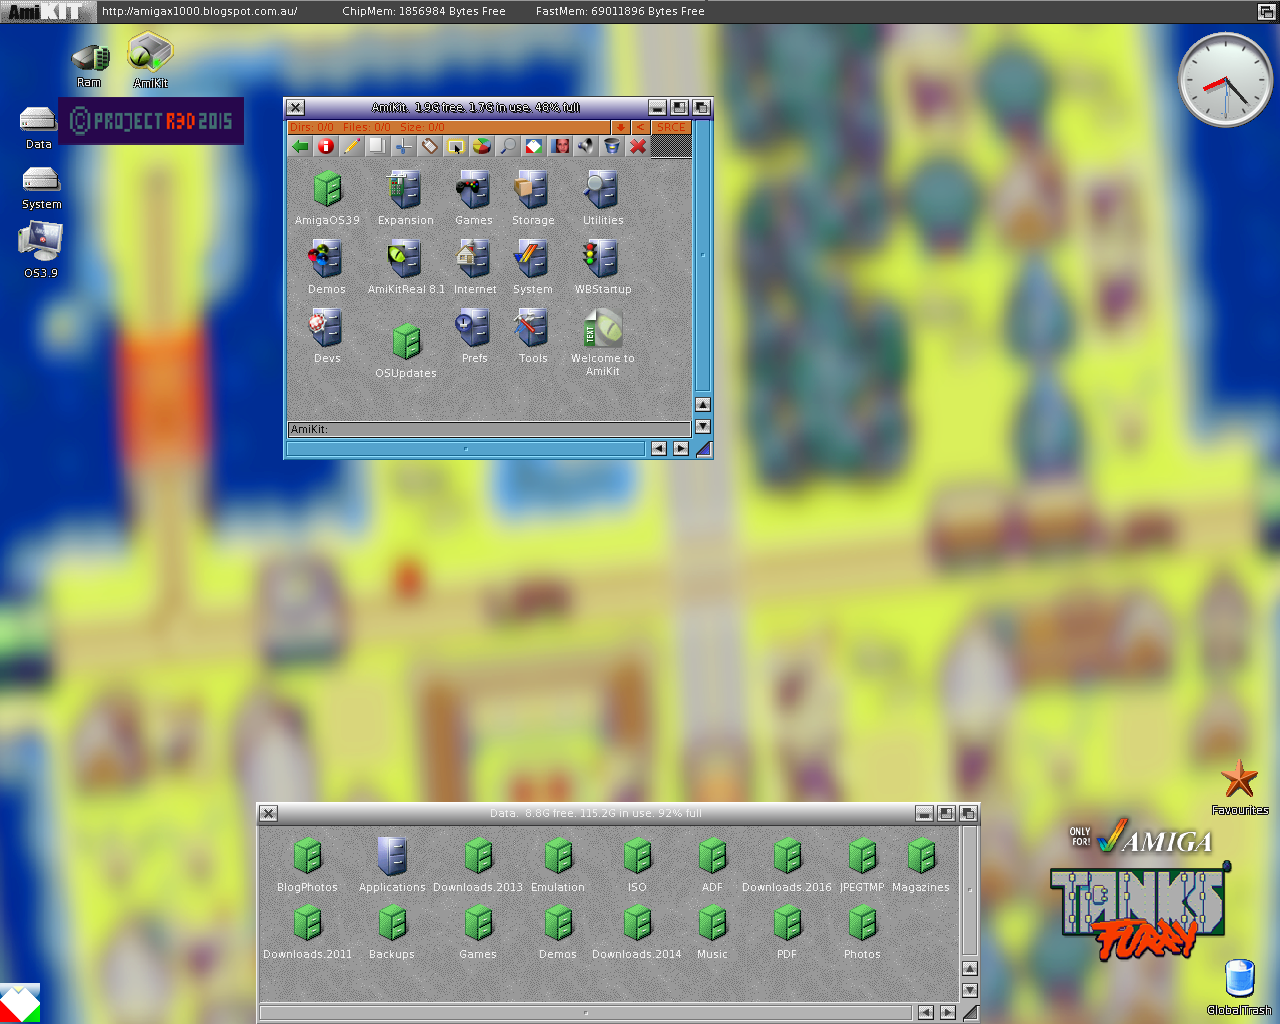 Amiga workbench 3 1 adf scan